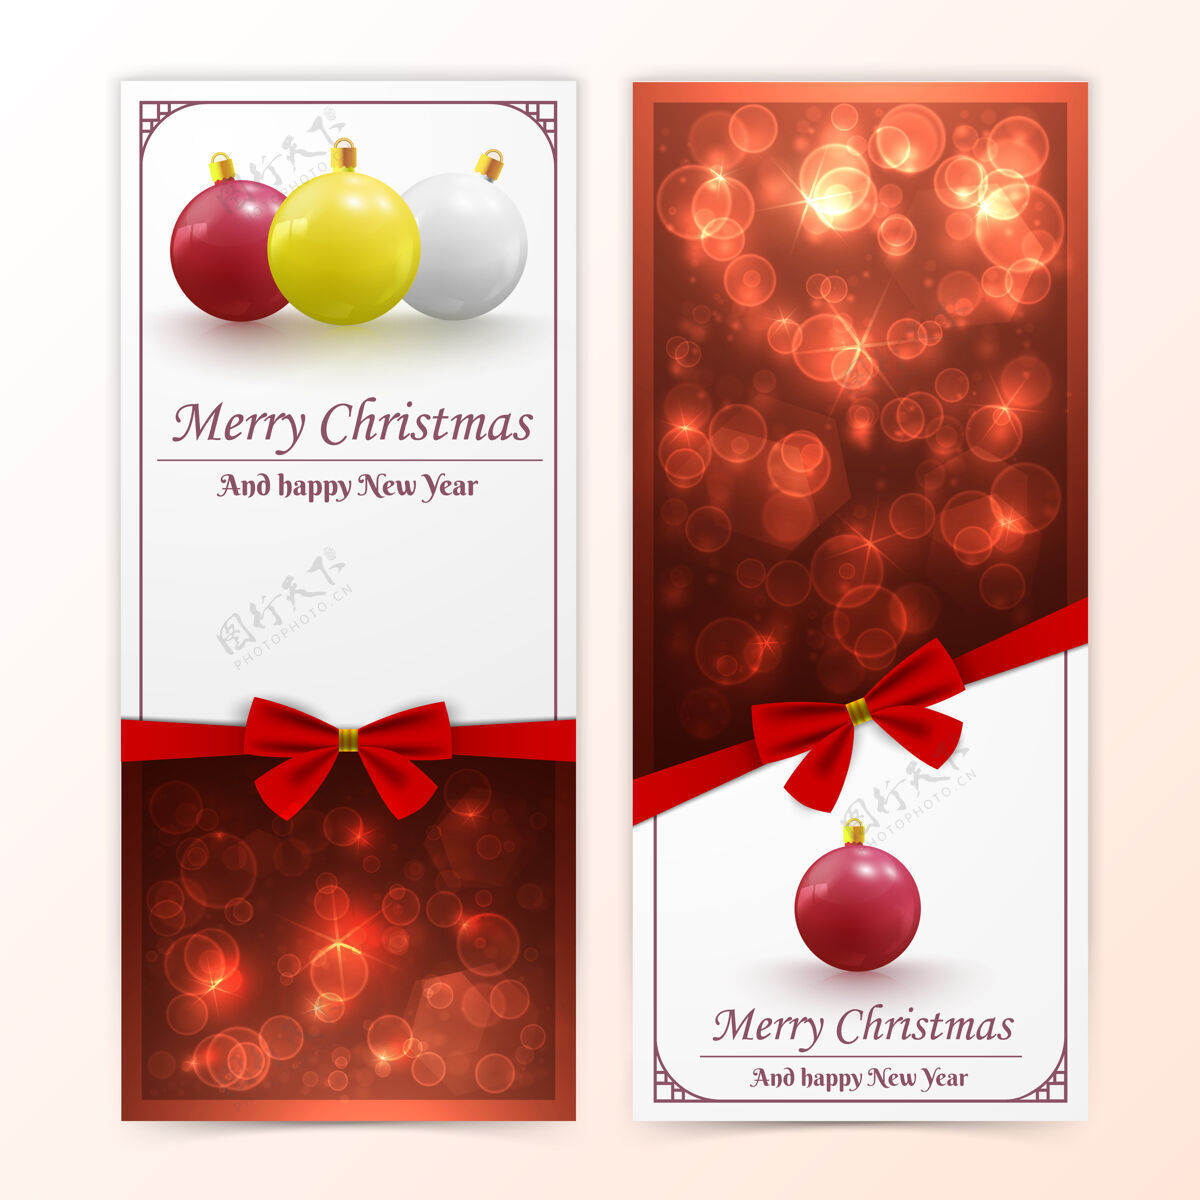 圆节日圣诞节和新年的垂直横幅与圣诞饰品和红色蝴蝶结圣诞树年布局